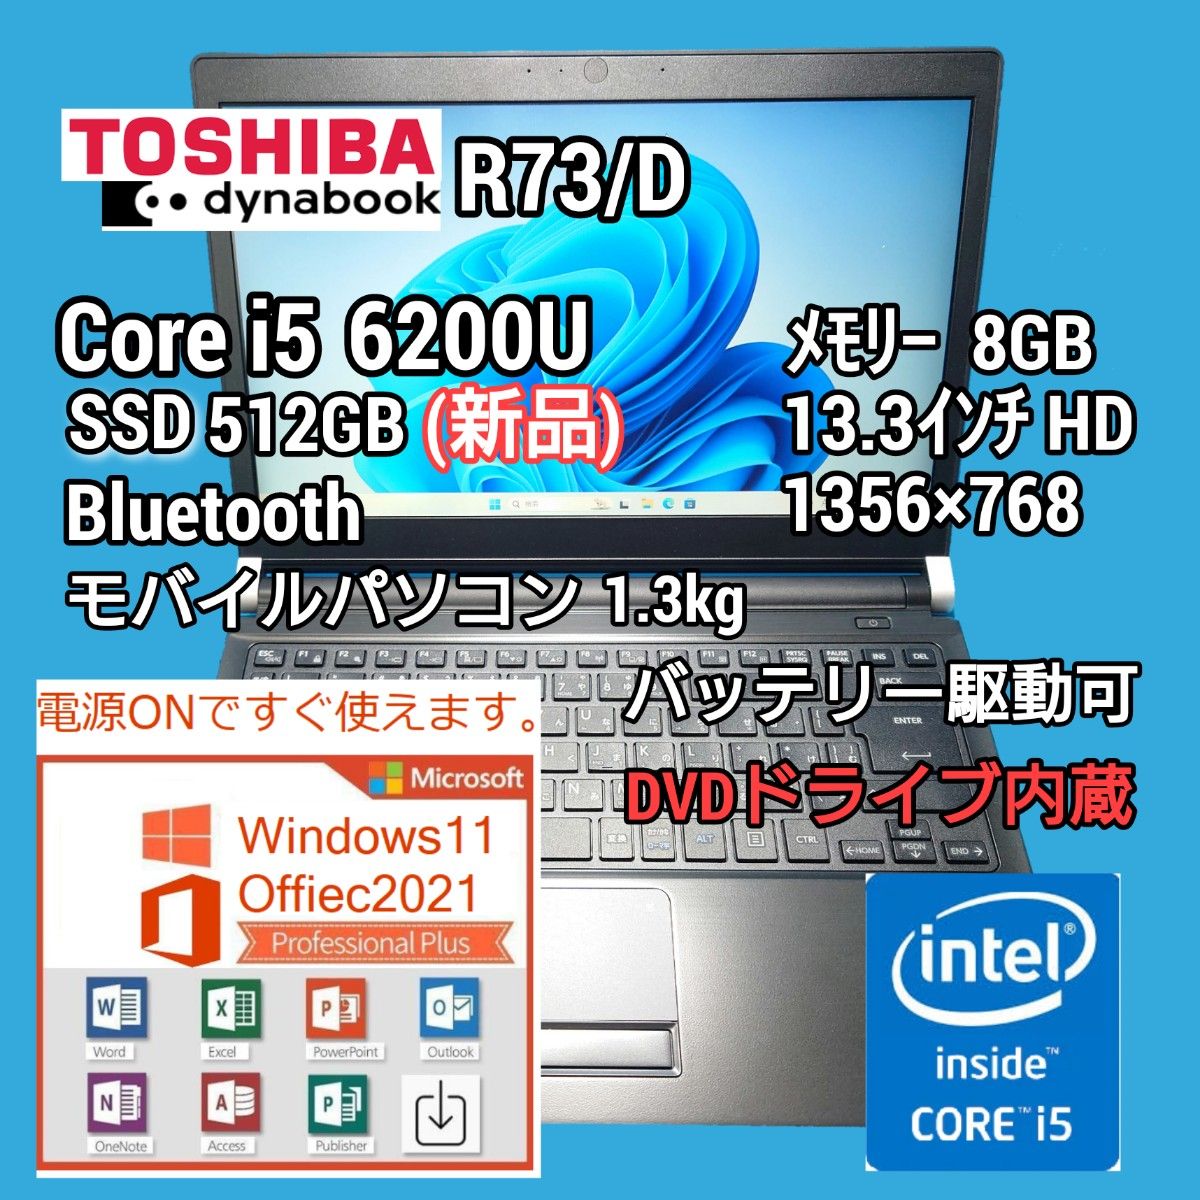 東芝 dynabook R73/D Core i5 SSD 512GB Windows11 Office2021 モバイルパソコン